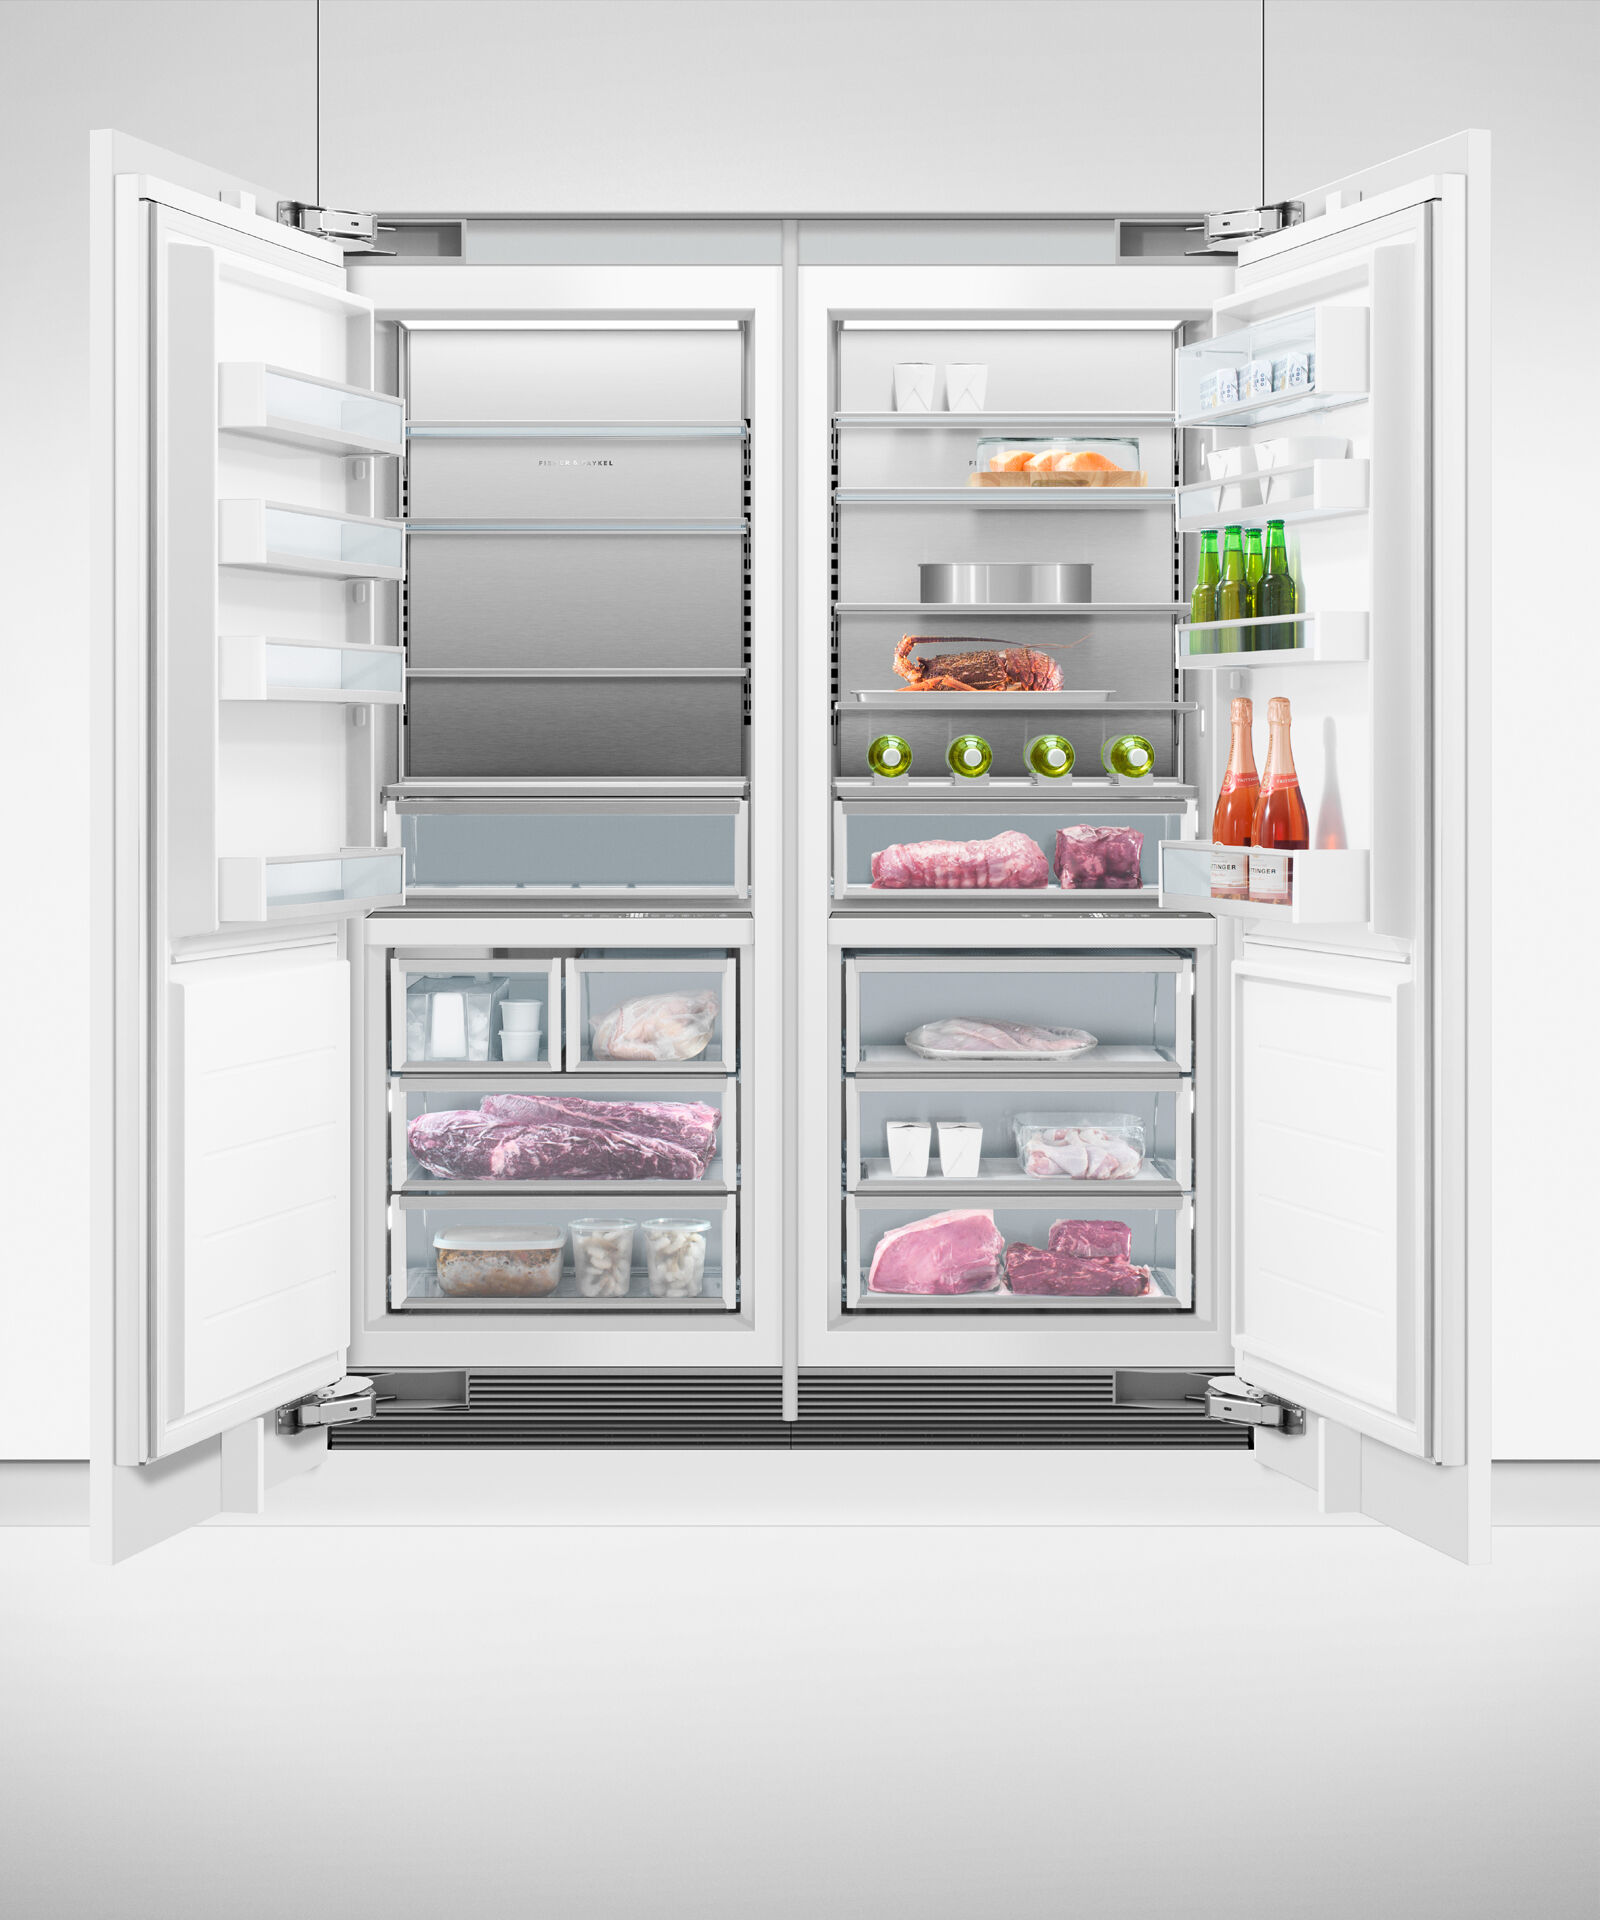 嵌入式立式冷凍櫃, 76cm, 自動製冰 gallery image 15.0